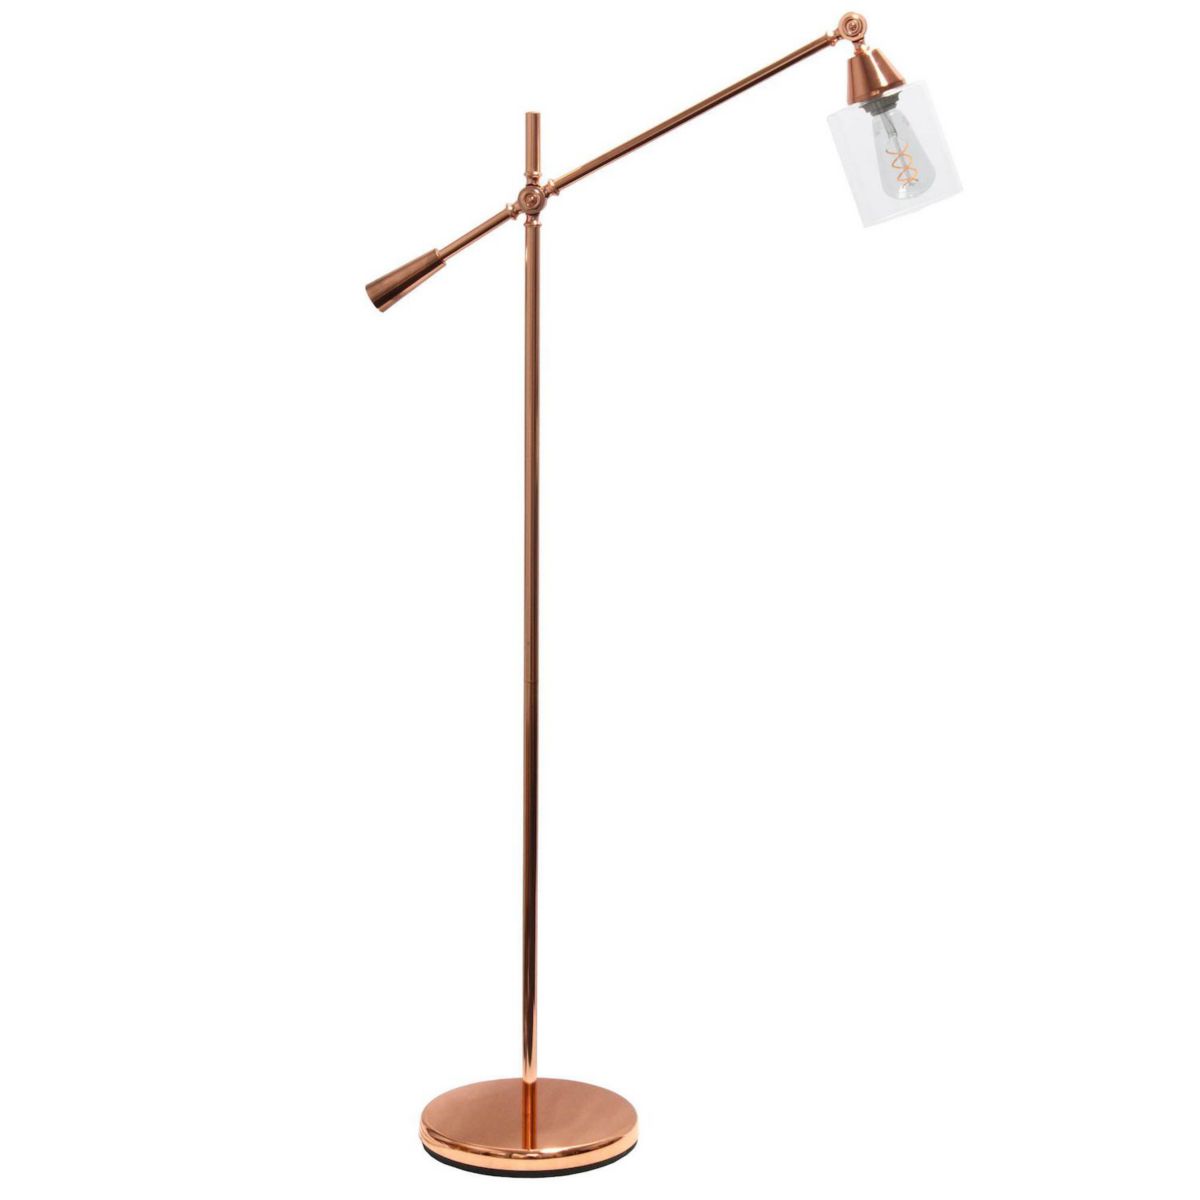 Напольный светильник Elegant Designs Pivot Arm со стеклянным абажуром, розовое золото Elegant Designs